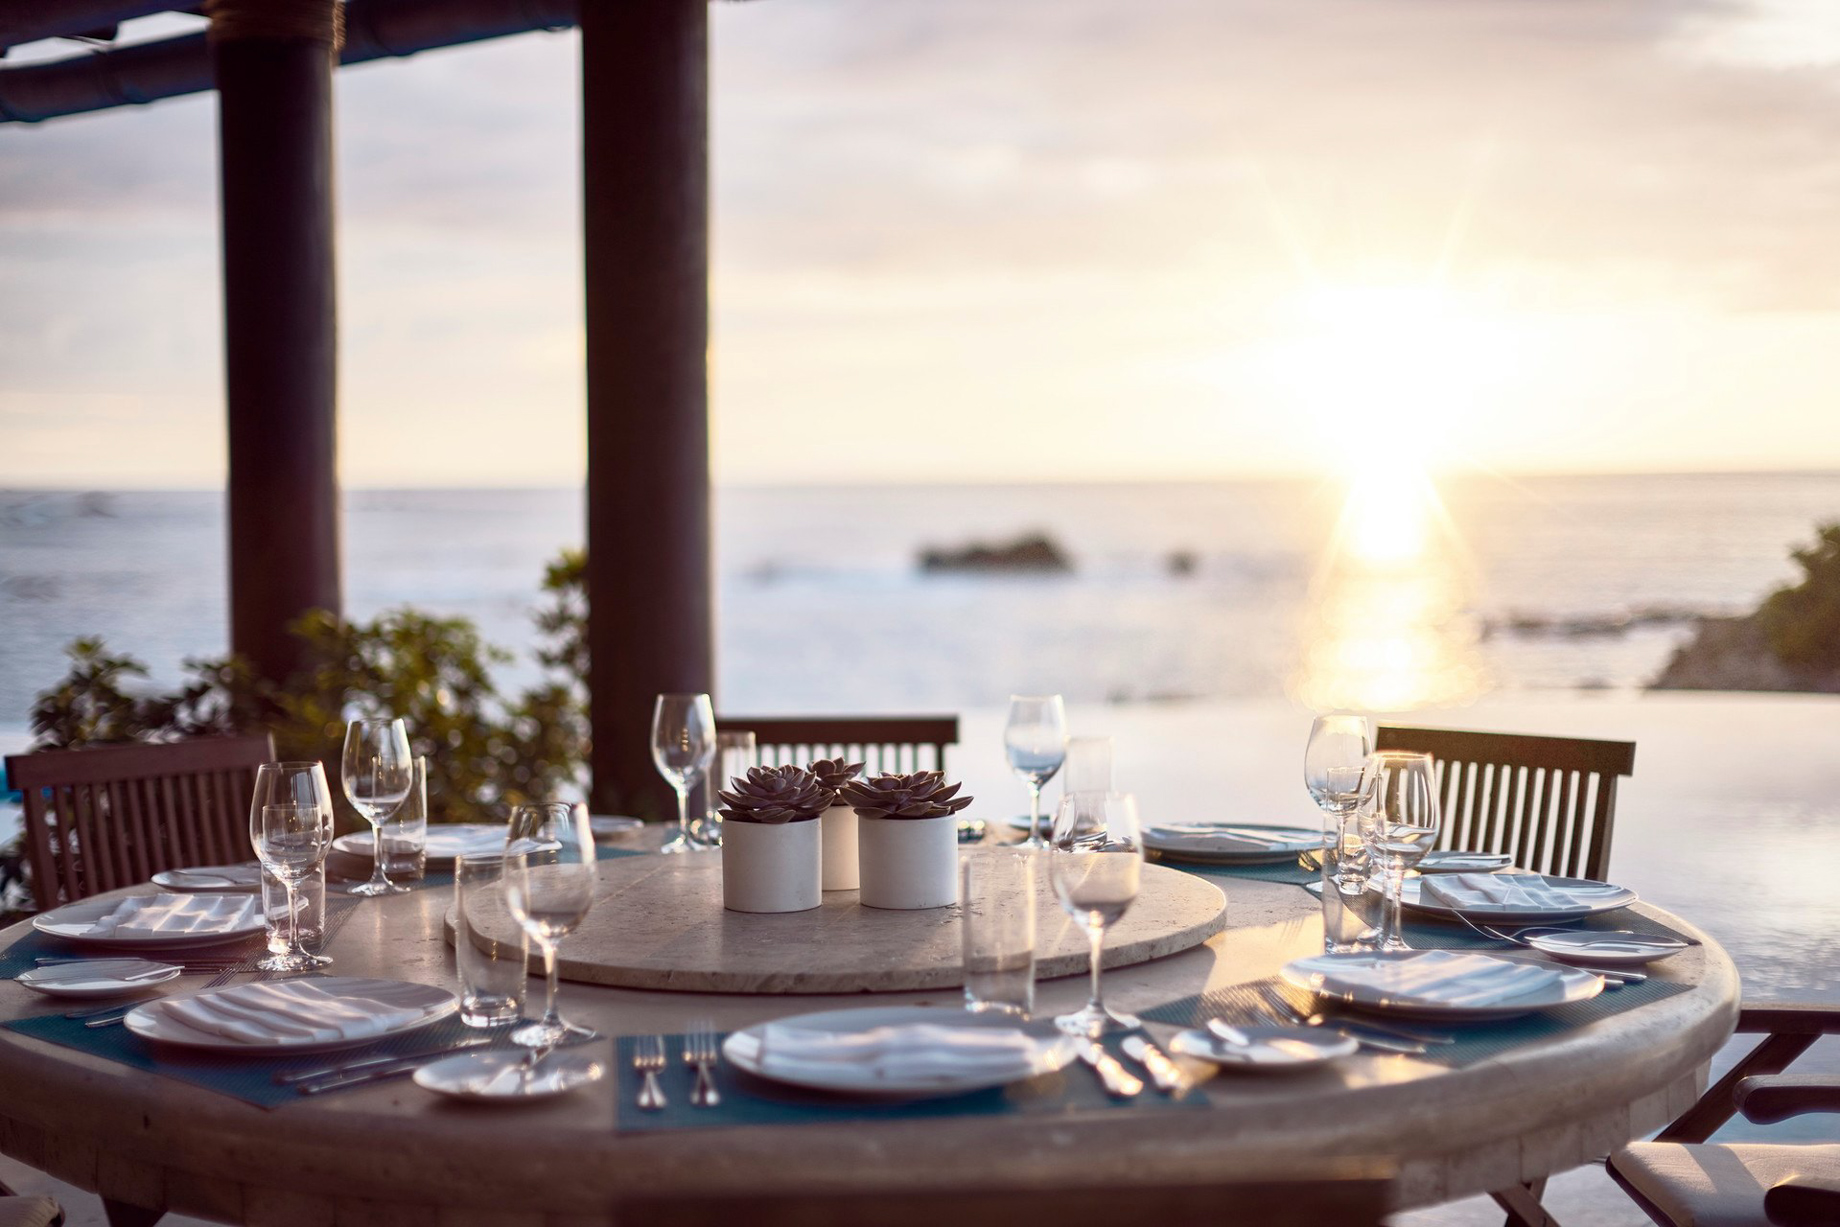 Four Seasons Resort Punta Mita – Nayarit, Mexico – Sunset Dining